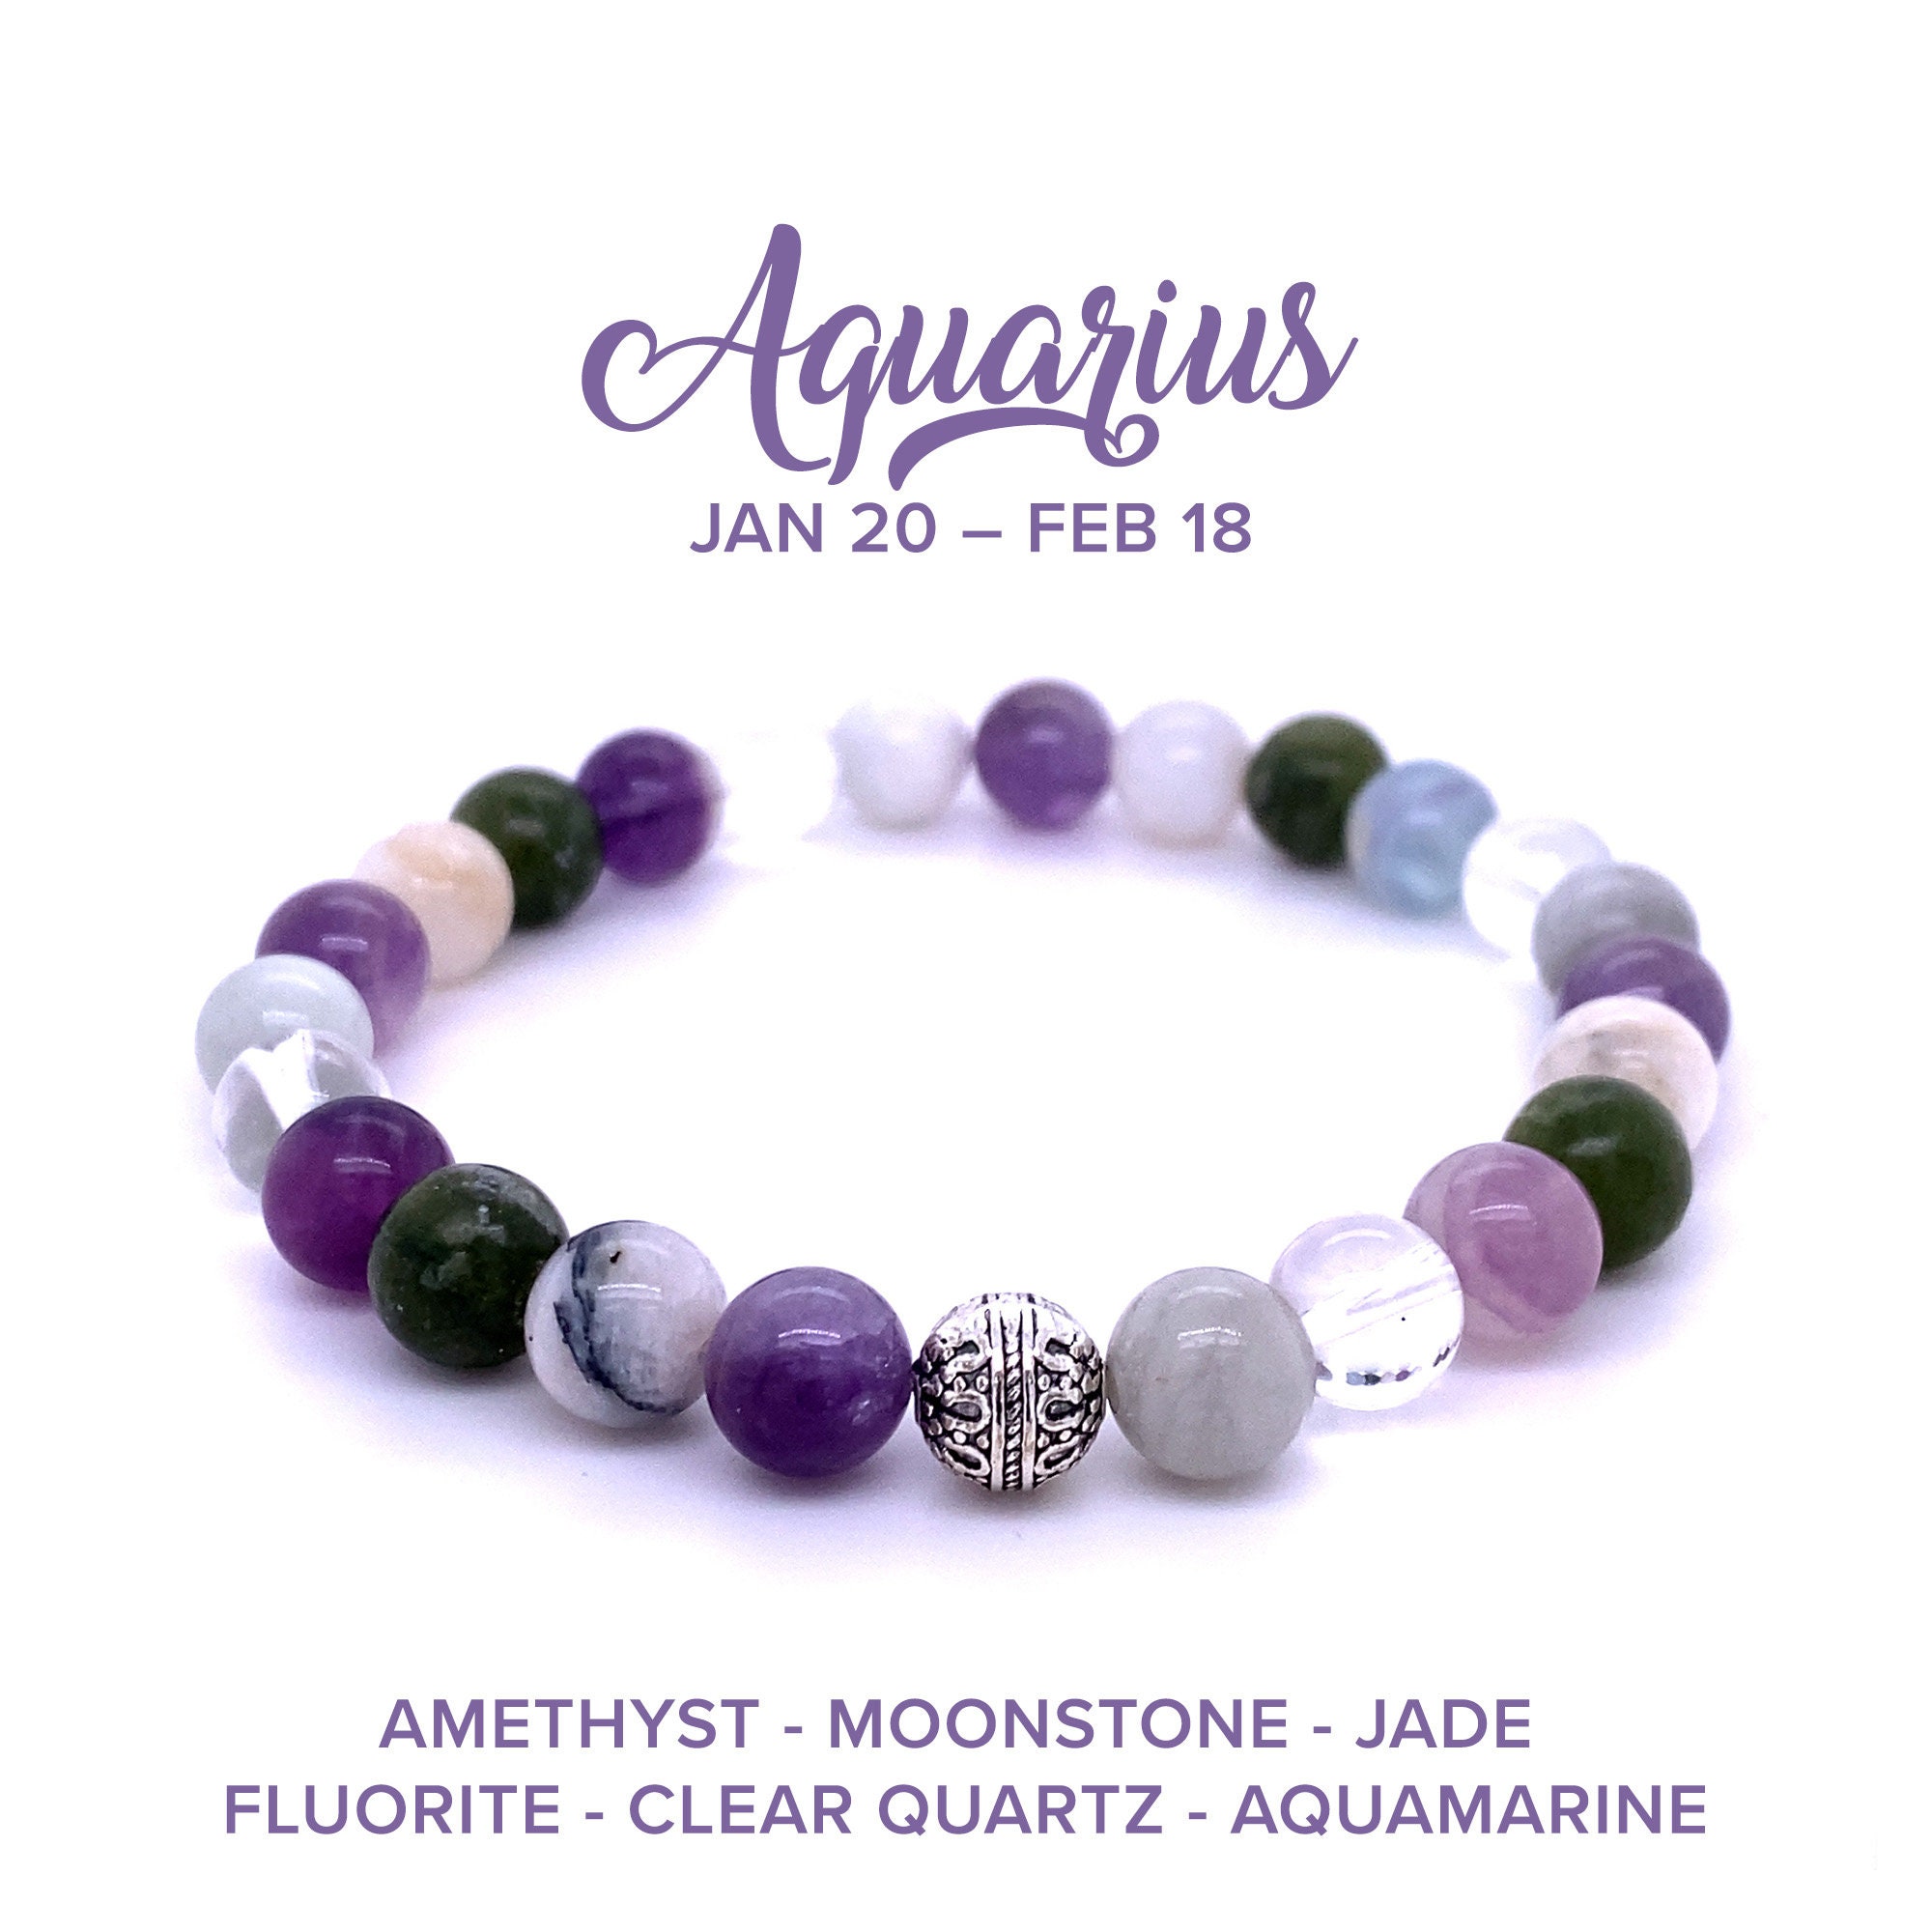 Aquarius Bracelet - Etsy